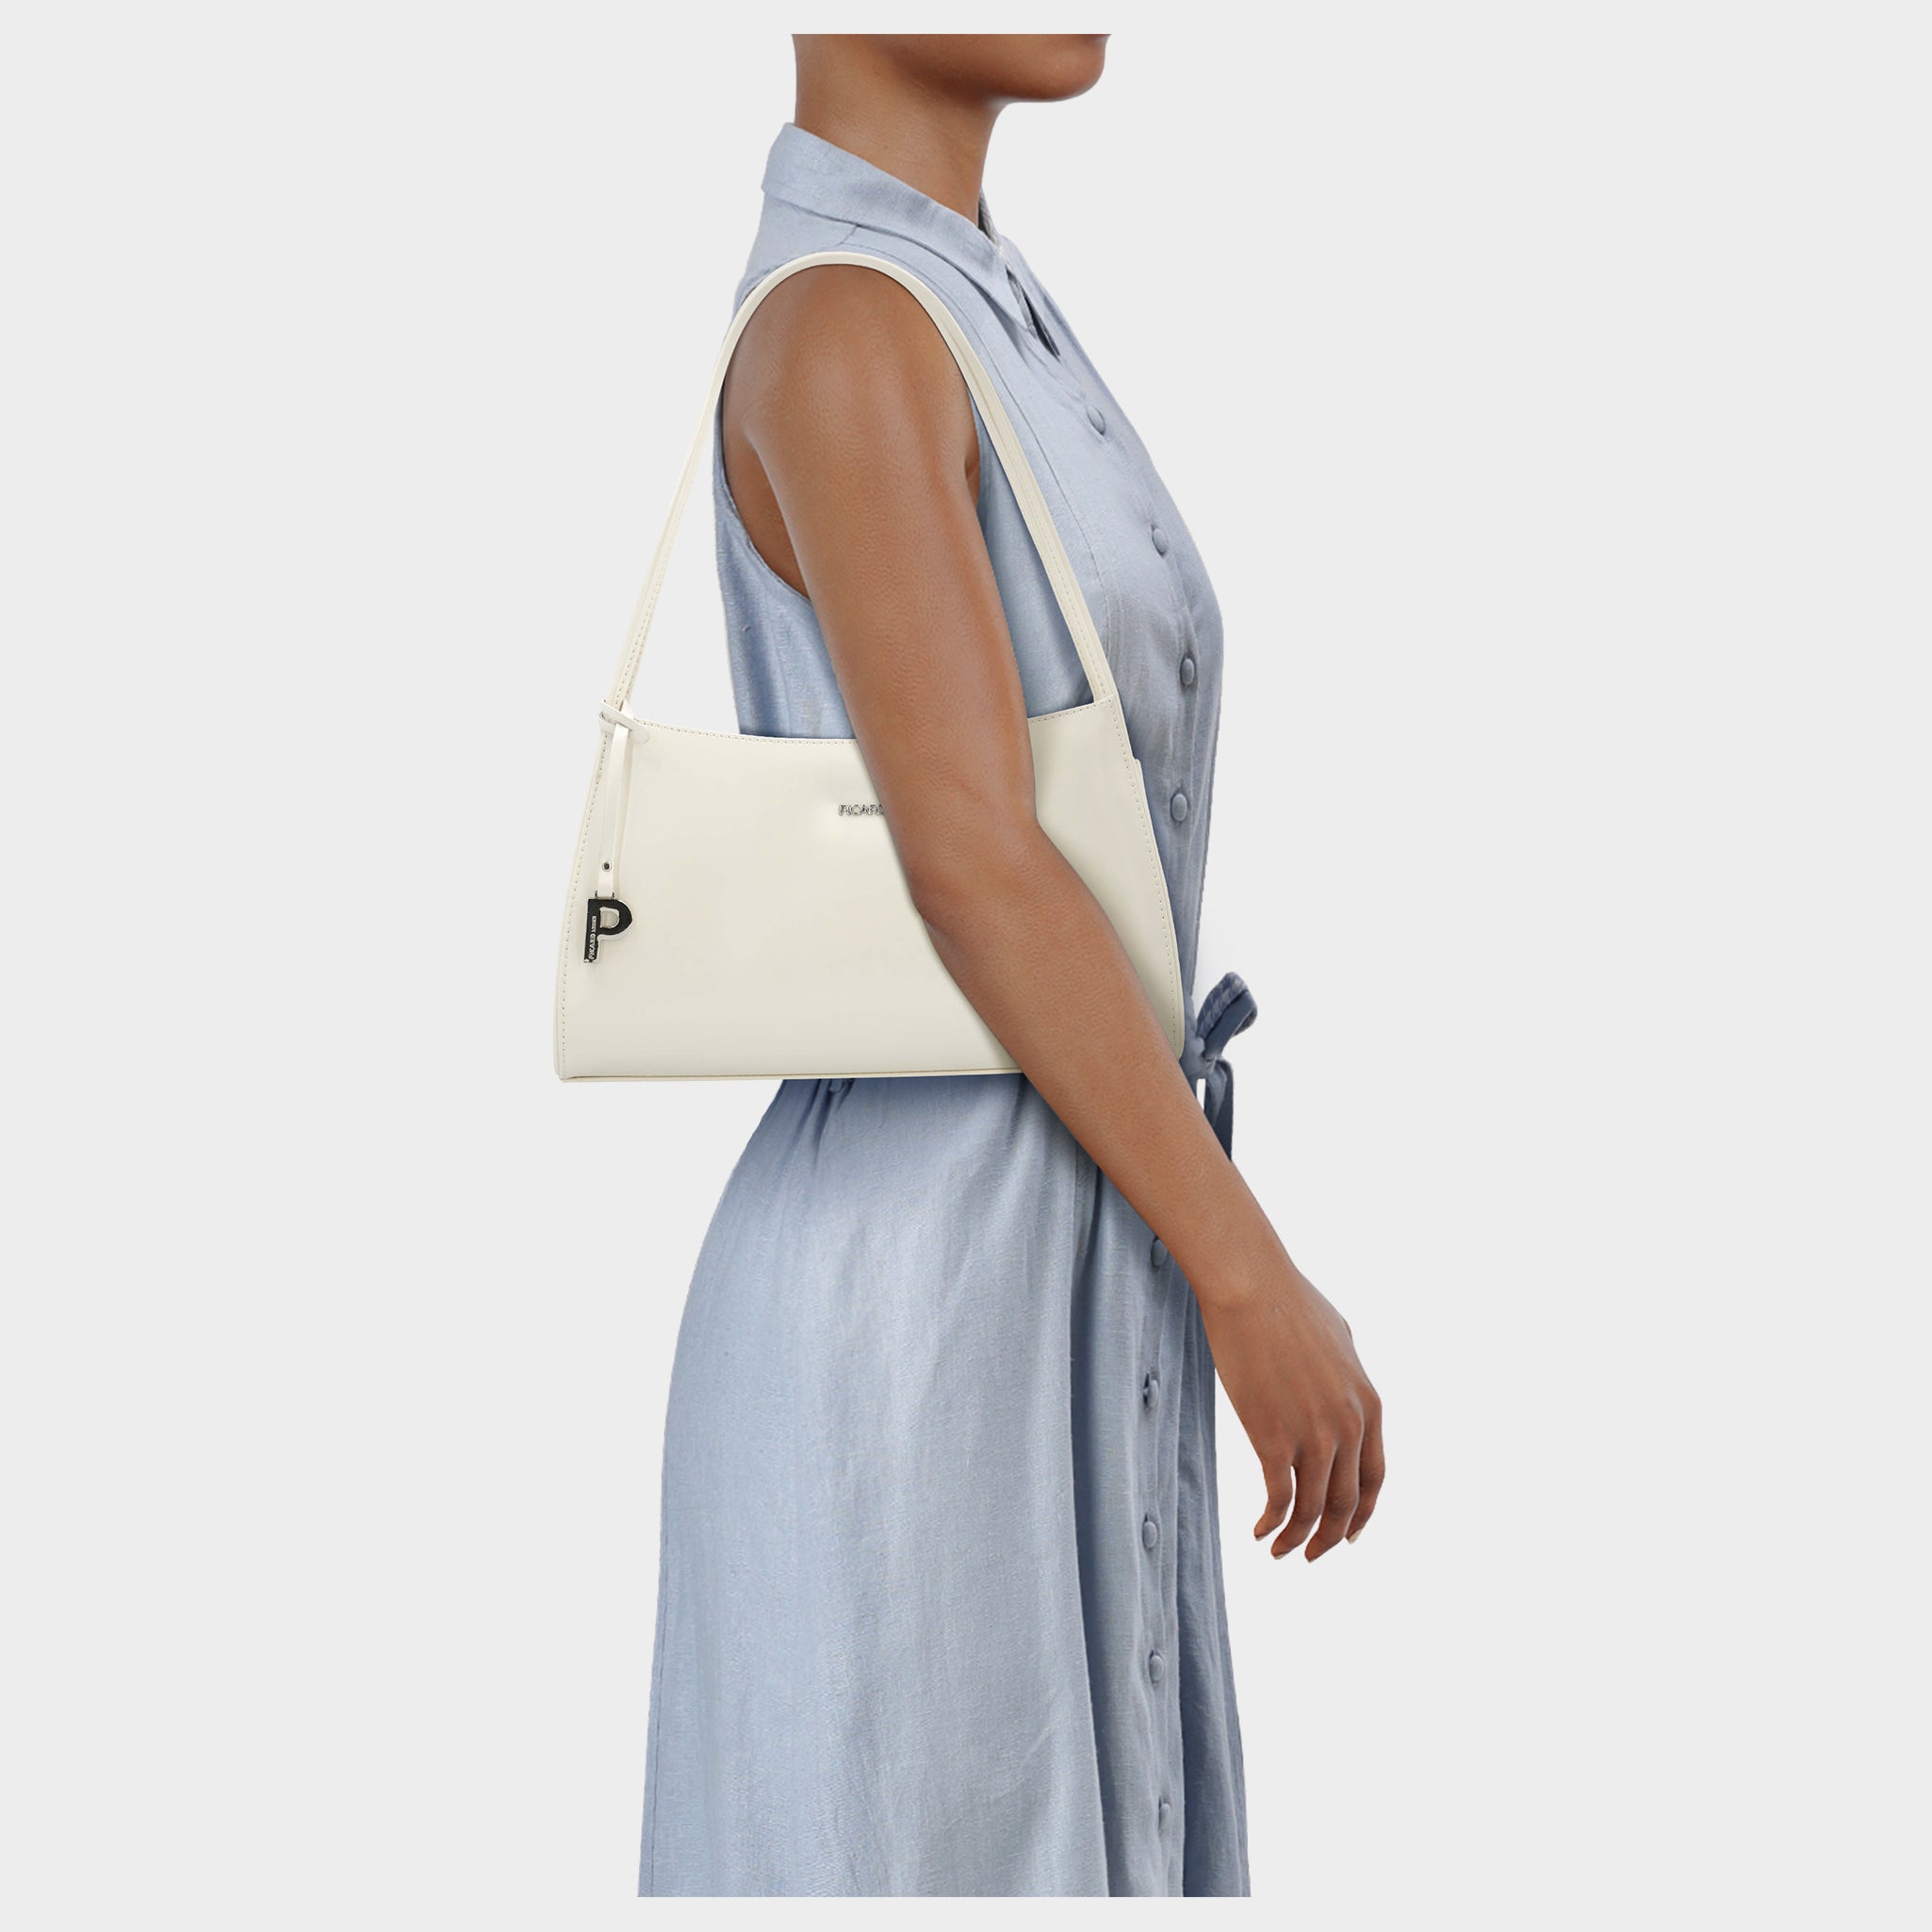 Find the best price on Picard Berlin Shoulder Bag (5611)